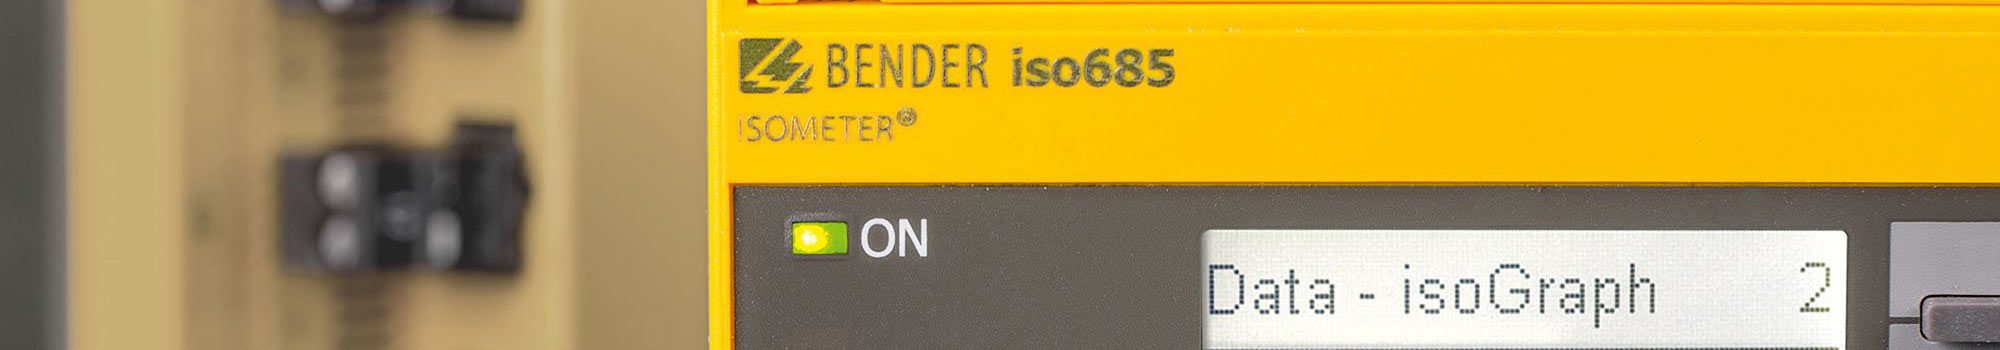 Bender Isolationsüberwachungsgerät Isolationswächter IRG 700RT AT Eisemann 12kva